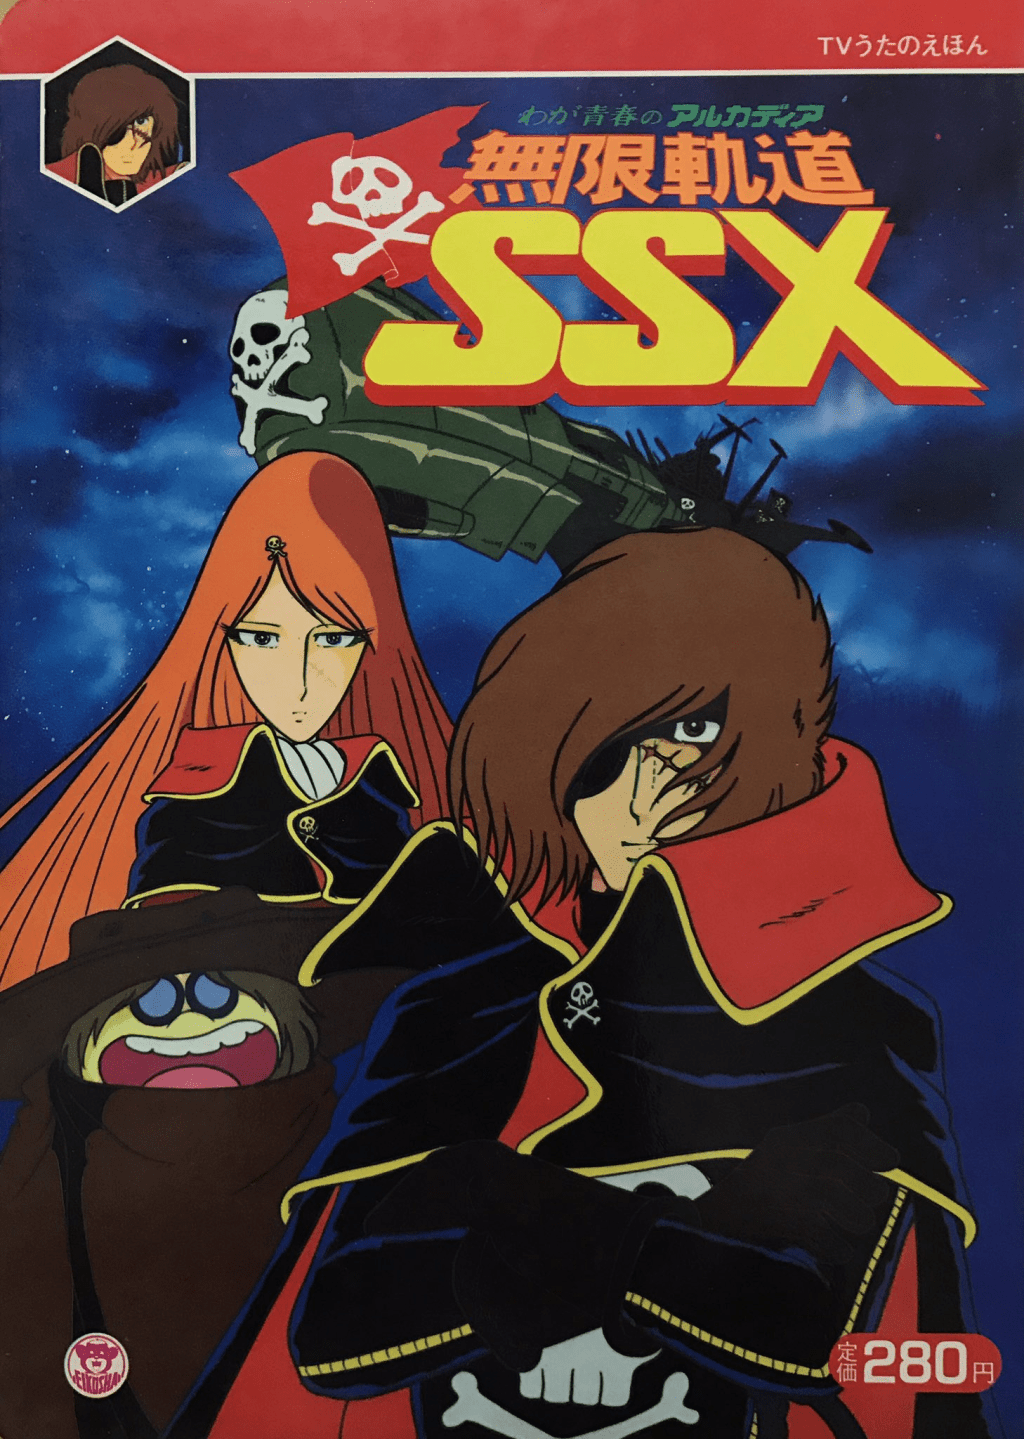 《无限轨道SSX》是东映动画制作的电视动画，于1982年10月13日至1983年3月30日于TBS电视台播出，全22集。